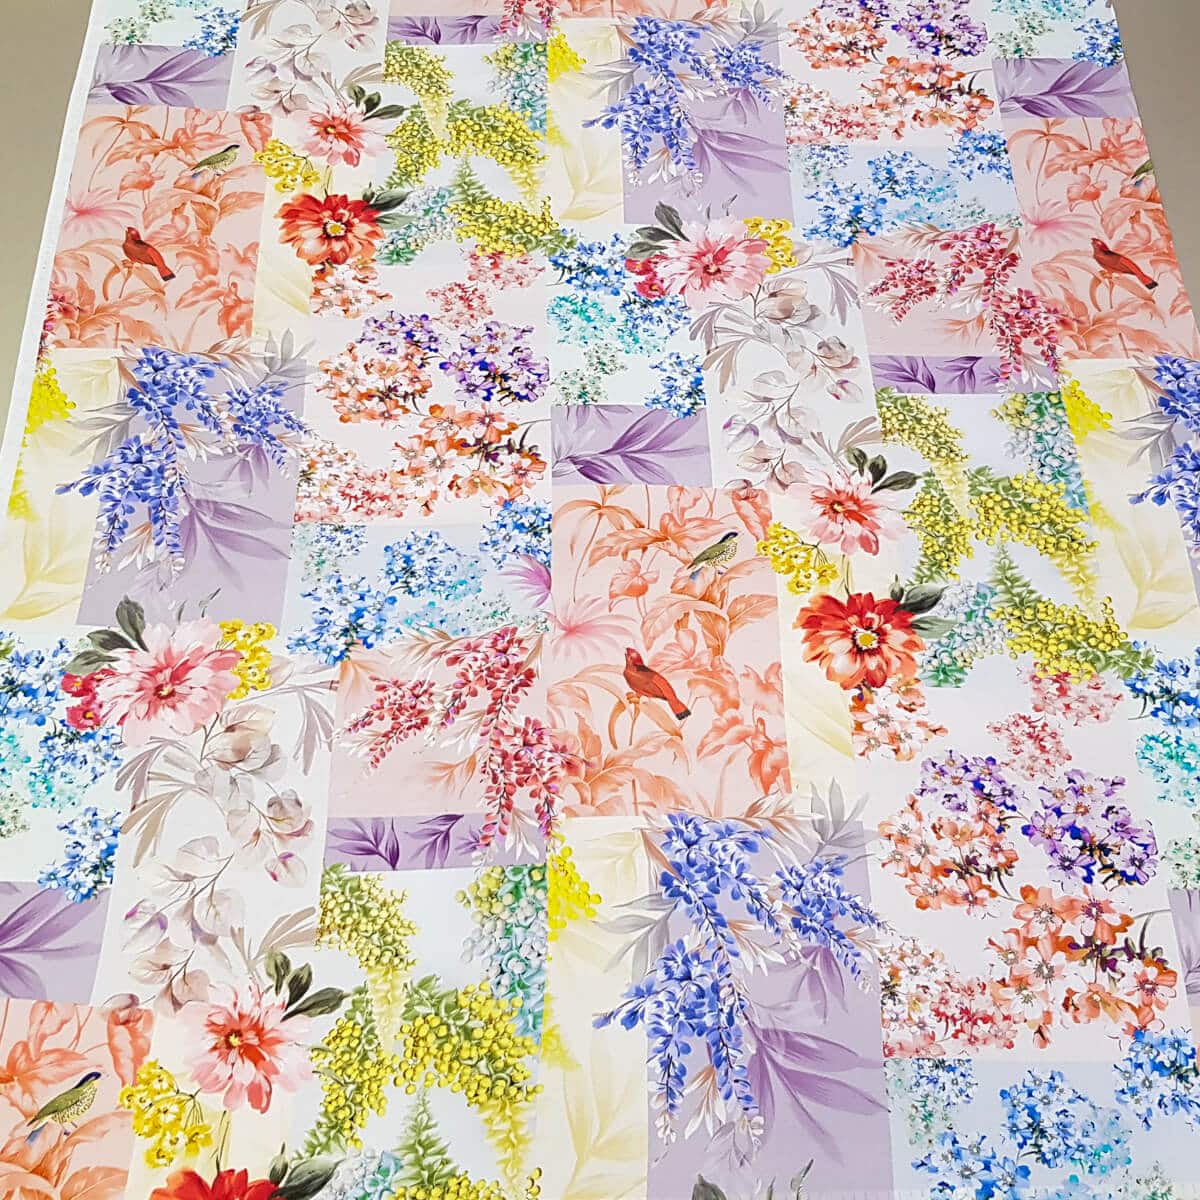 pastelowy jedwab szantungowy kolorowy wzor kwiaty ptakiE